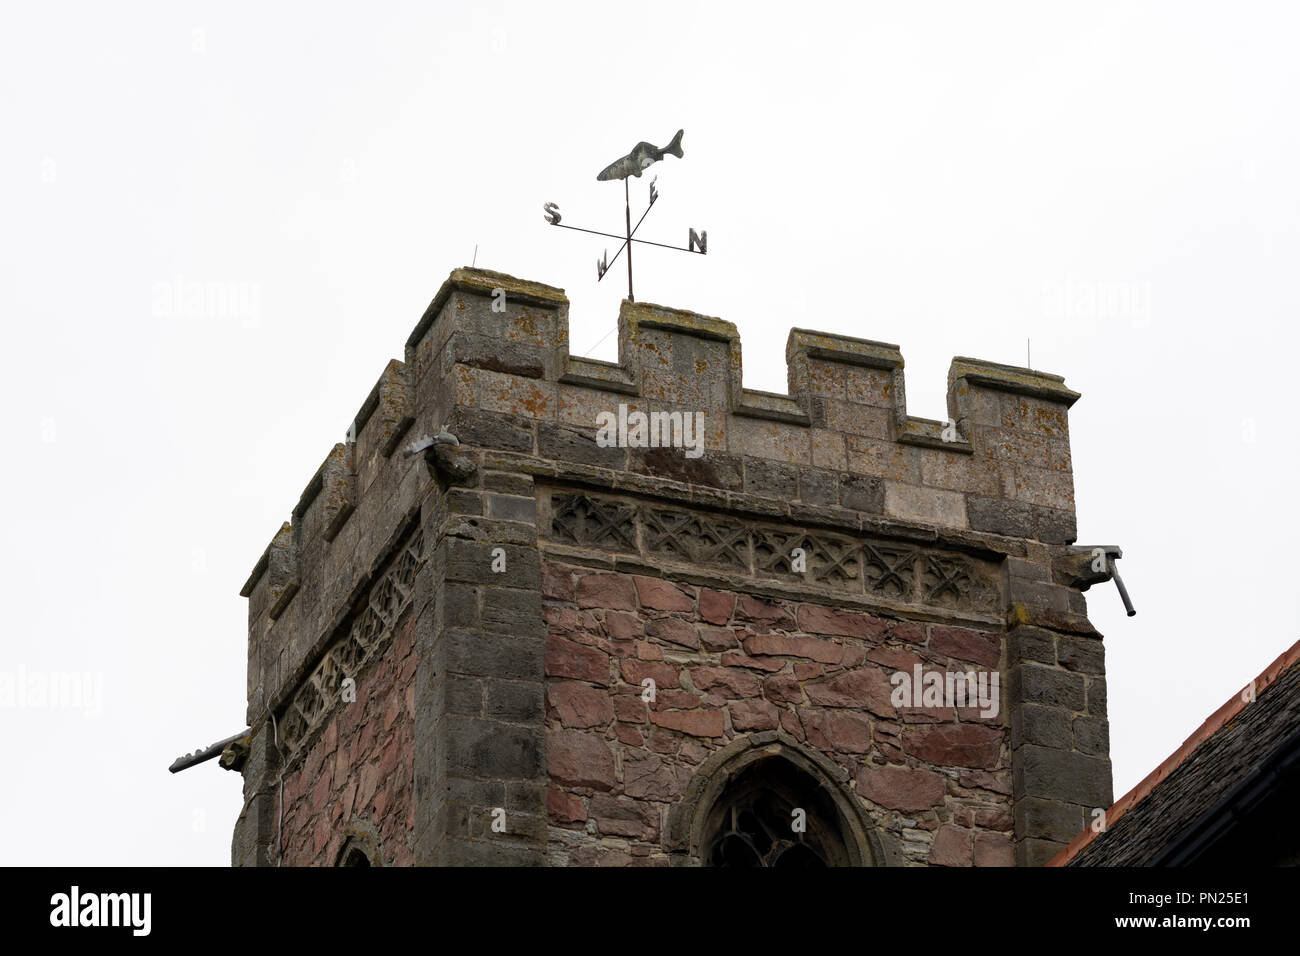 Turm oben mit Fisch Wetterfahne, All Saints Church, Seagrave, Leicestershire, England, Großbritannien Stockfoto